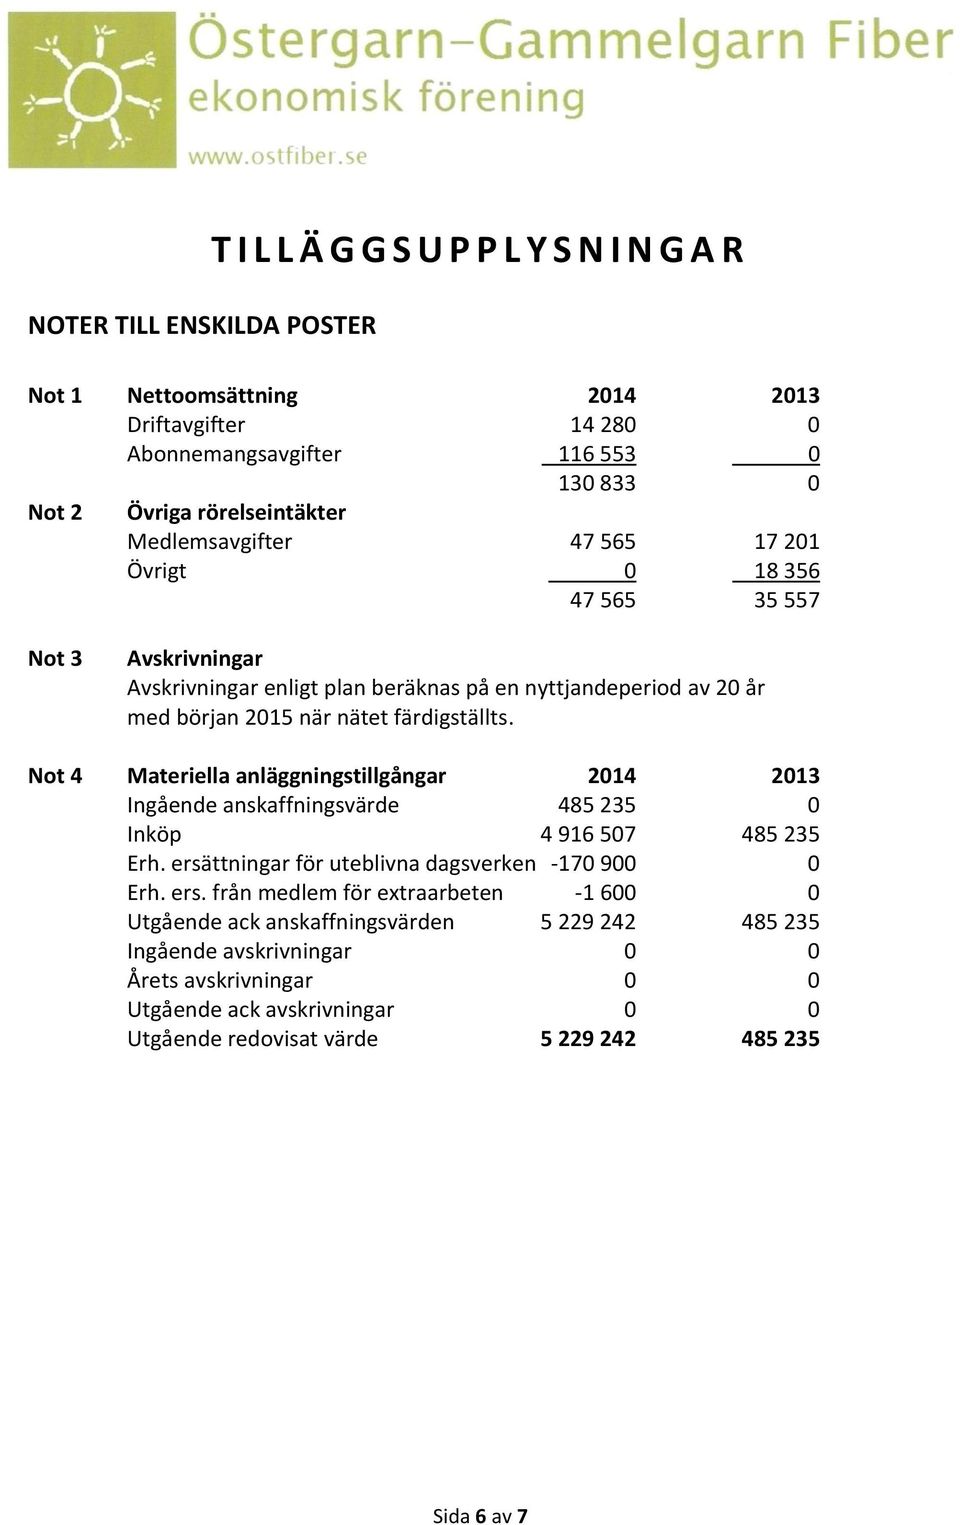 Not 4 Materiella anläggningstillgångar 2014 2013 Ingående anskaffningsvärde 485 235 0 Inköp 4 916 507 485 235 Erh. ersä